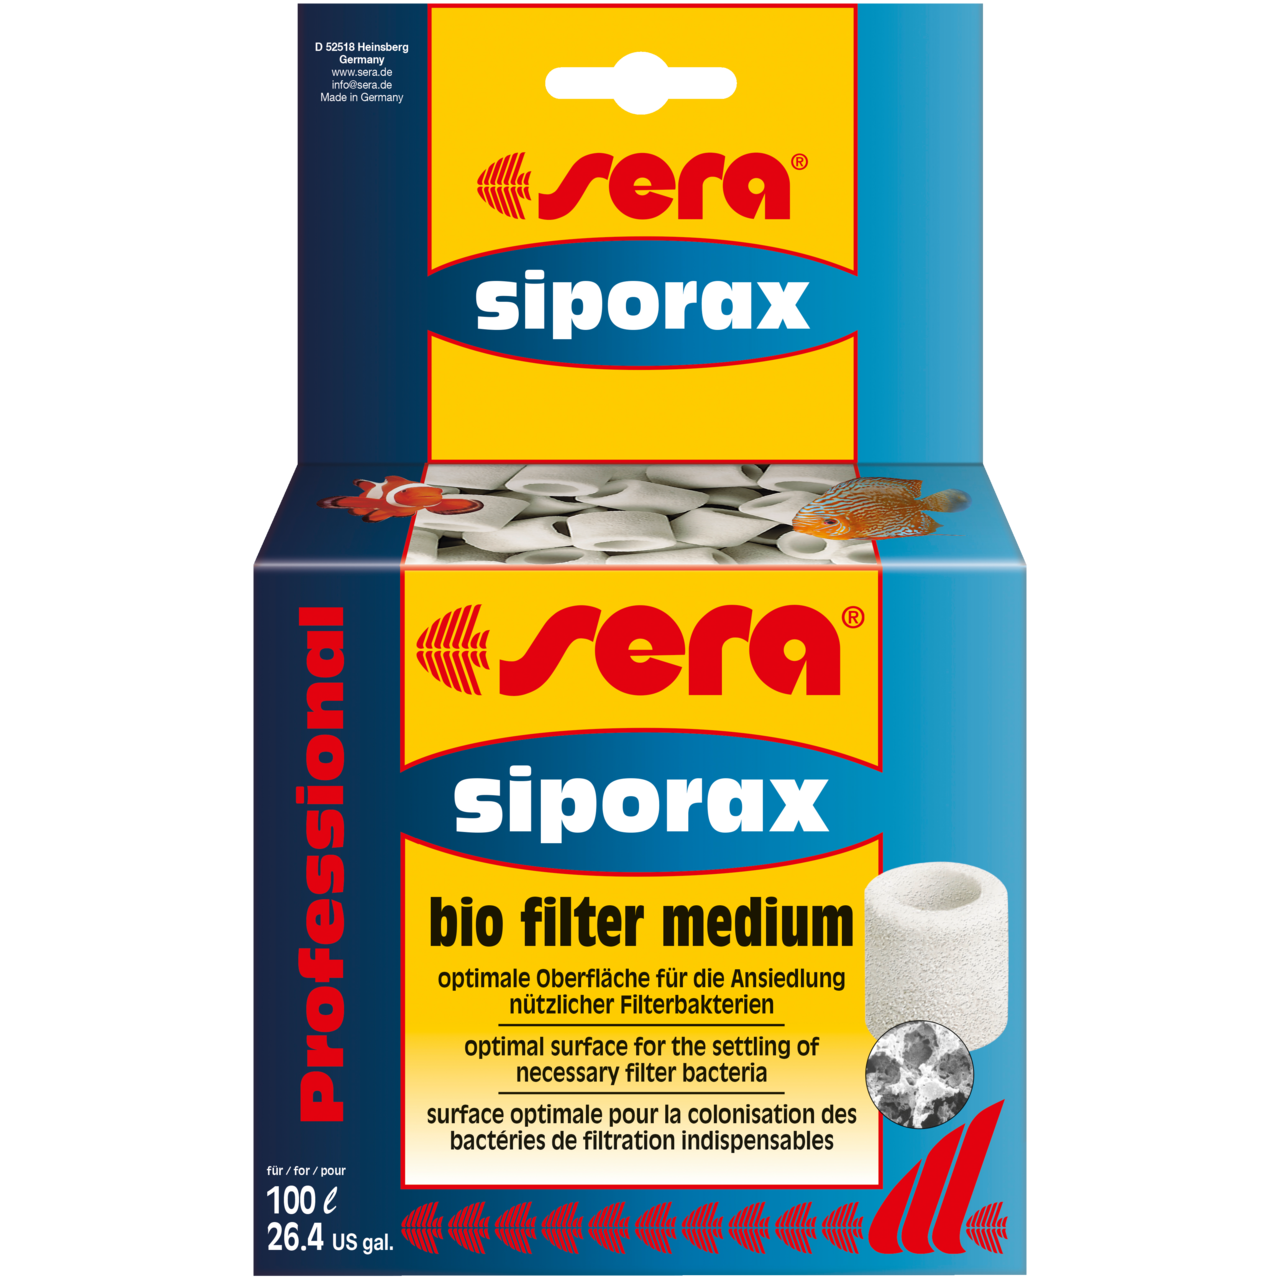 Sera Siporax Professional 15 mm-Filter Media-Seachem-500 ml-Iwagumi